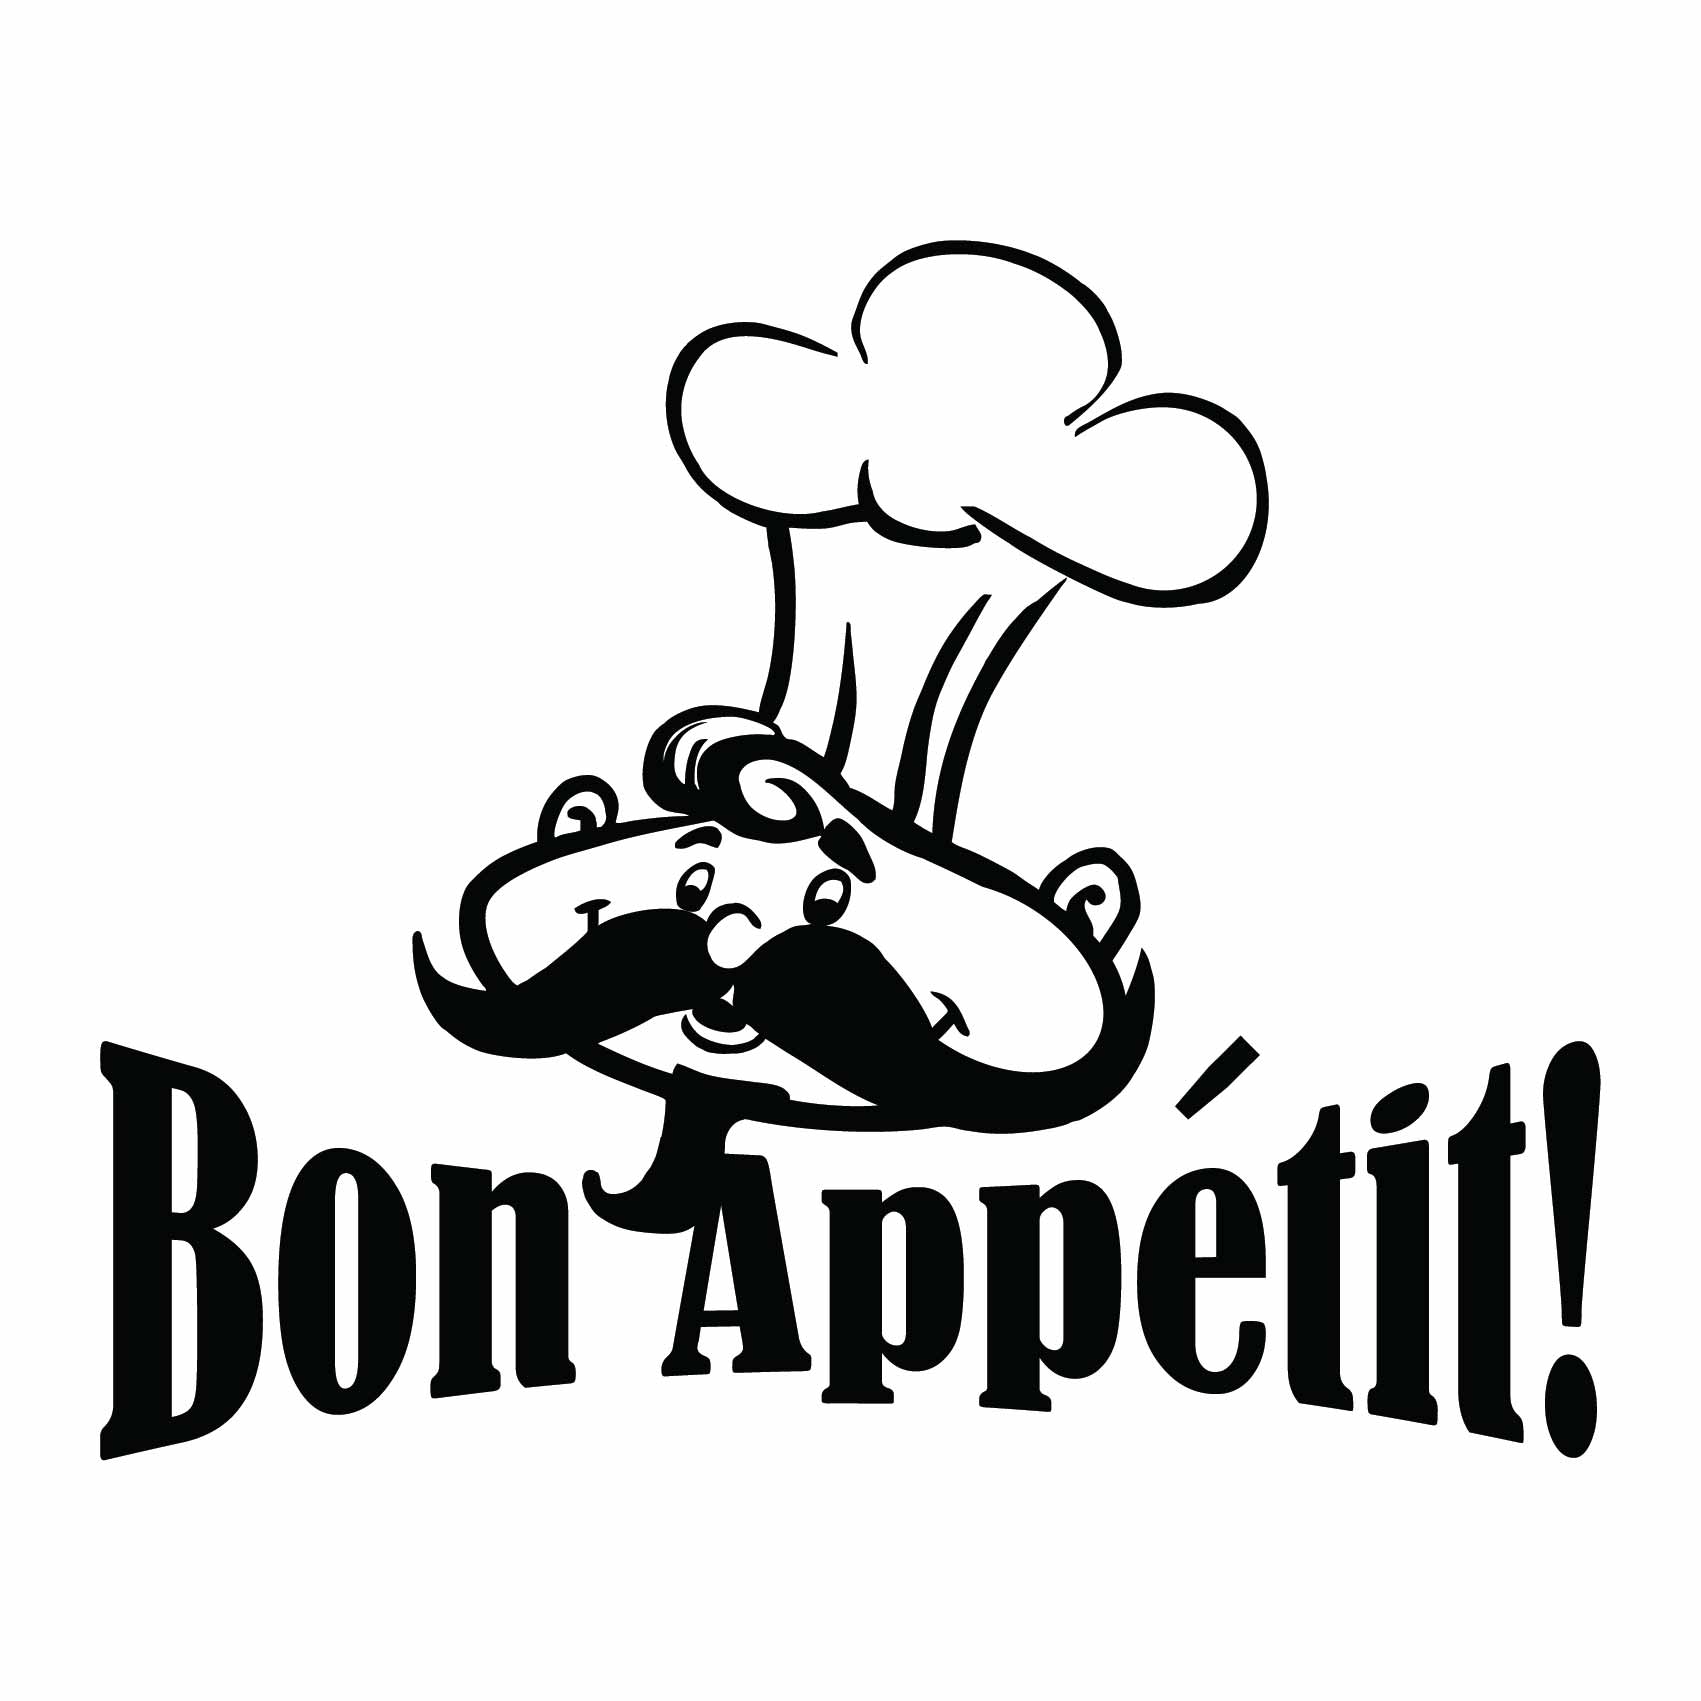 stickers-bon-appetit-chef-ref64cuisine-stickers-muraux-cuisine-autocollant-deco-cuisine-chambre-salon-sticker-mural-decoration-(2)